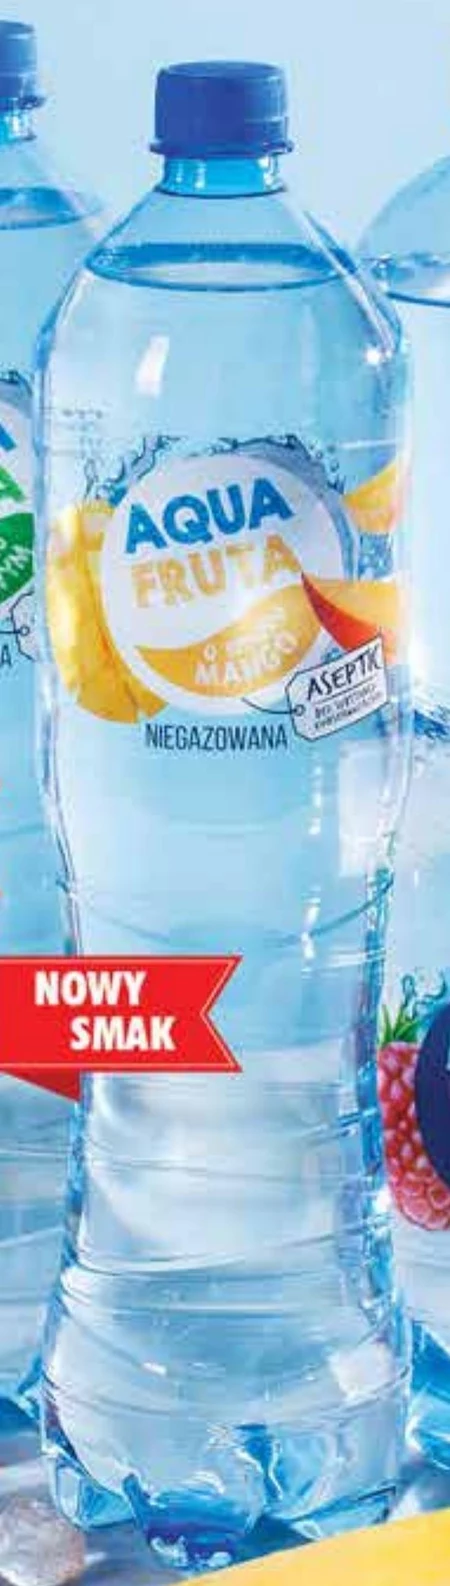 Napój Aqua Fruta